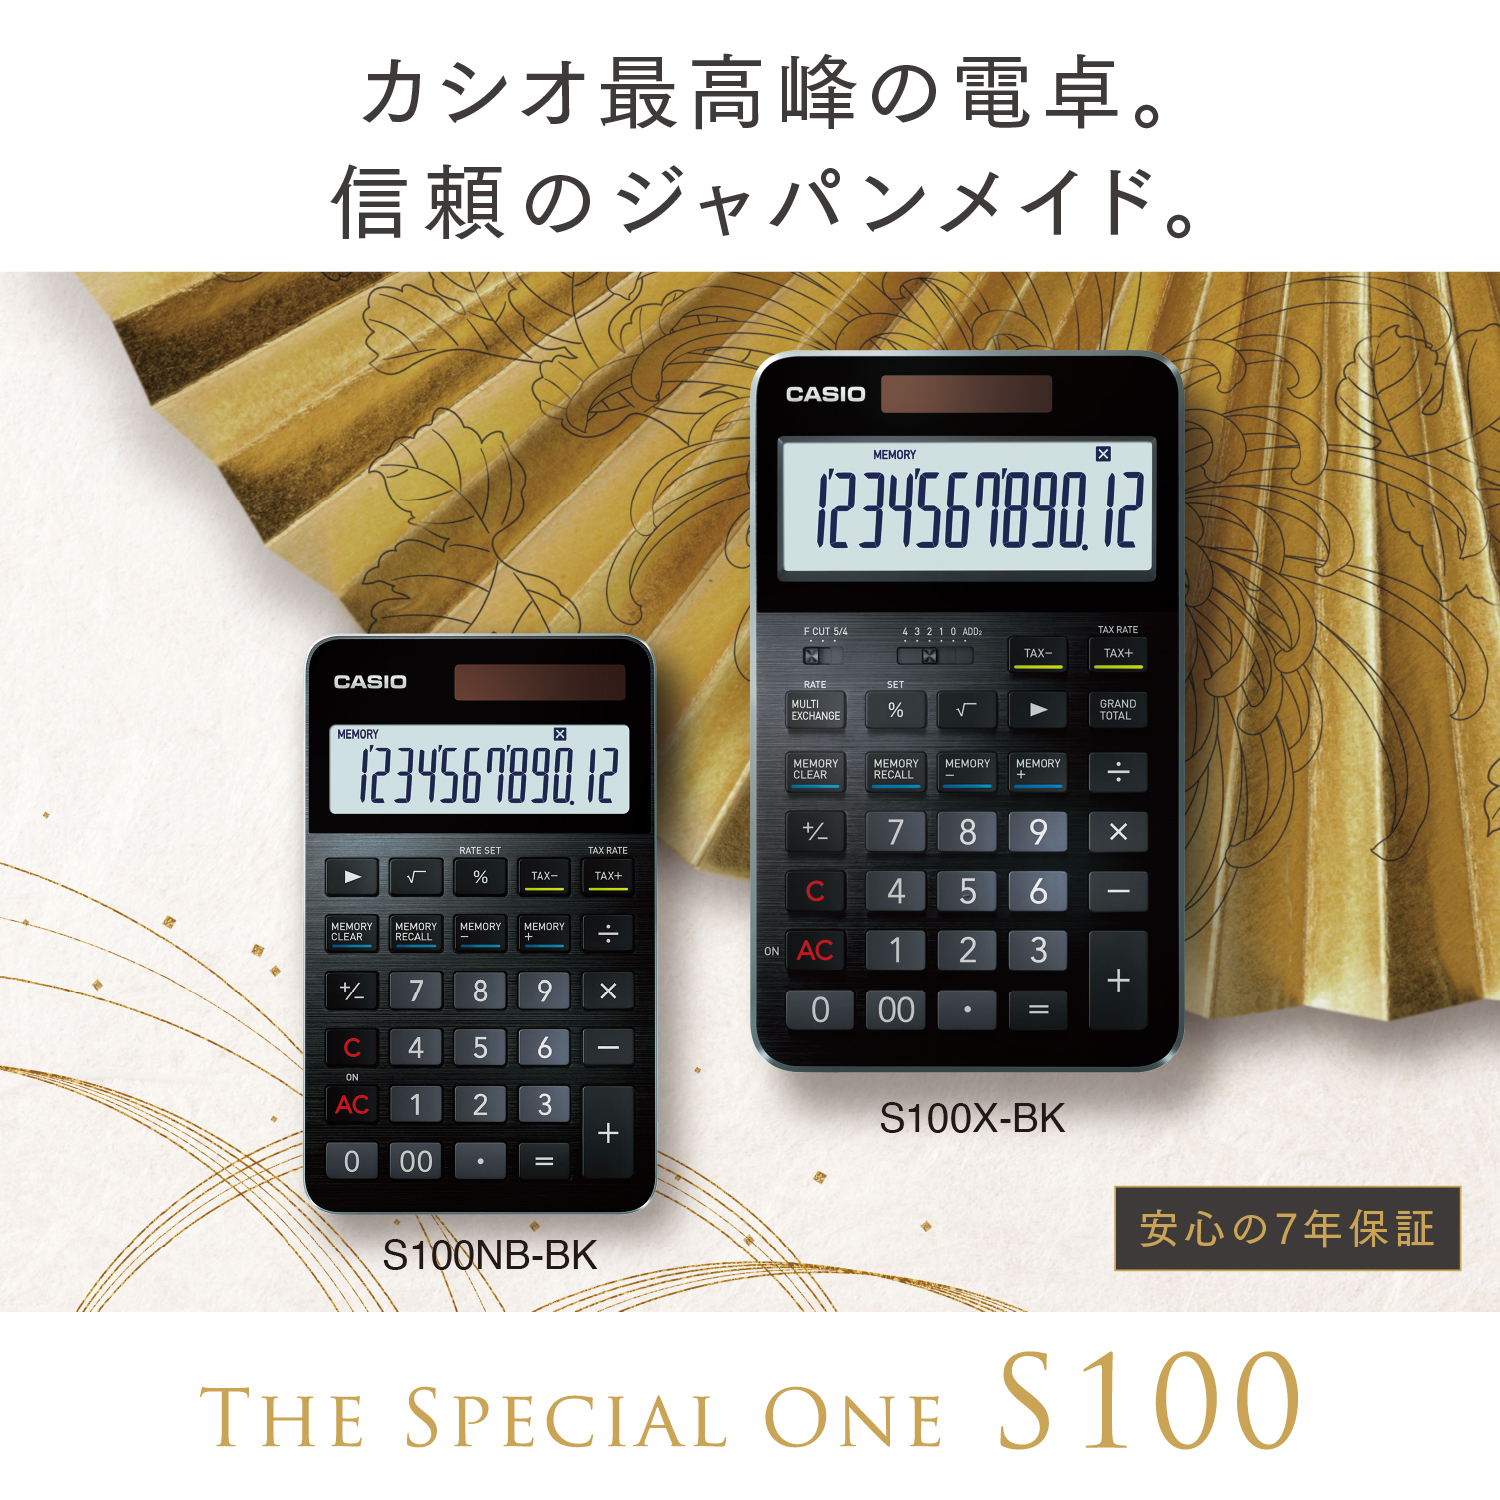 カシオ電卓 S100X-BK hi011-080|JALふるさと納税|JALのマイルがたまる 